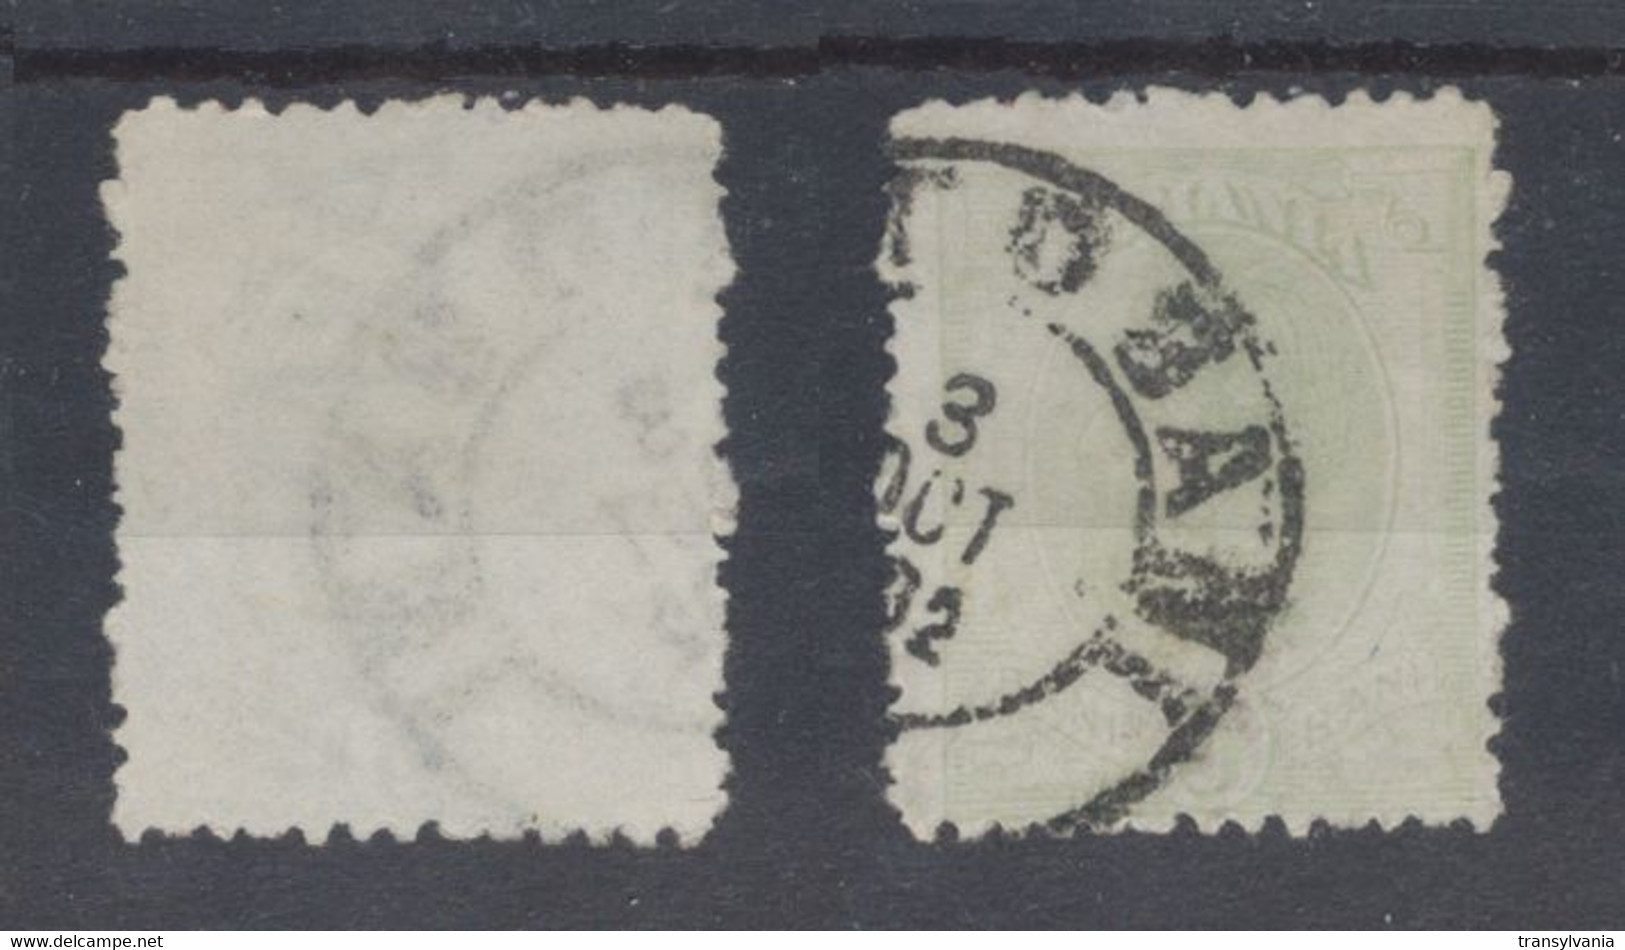 Romania 1900 Wheat Ear Issue 5 Bani Used Stamp With Scarce JOHANNOT Watermark - Plaatfouten En Curiosa